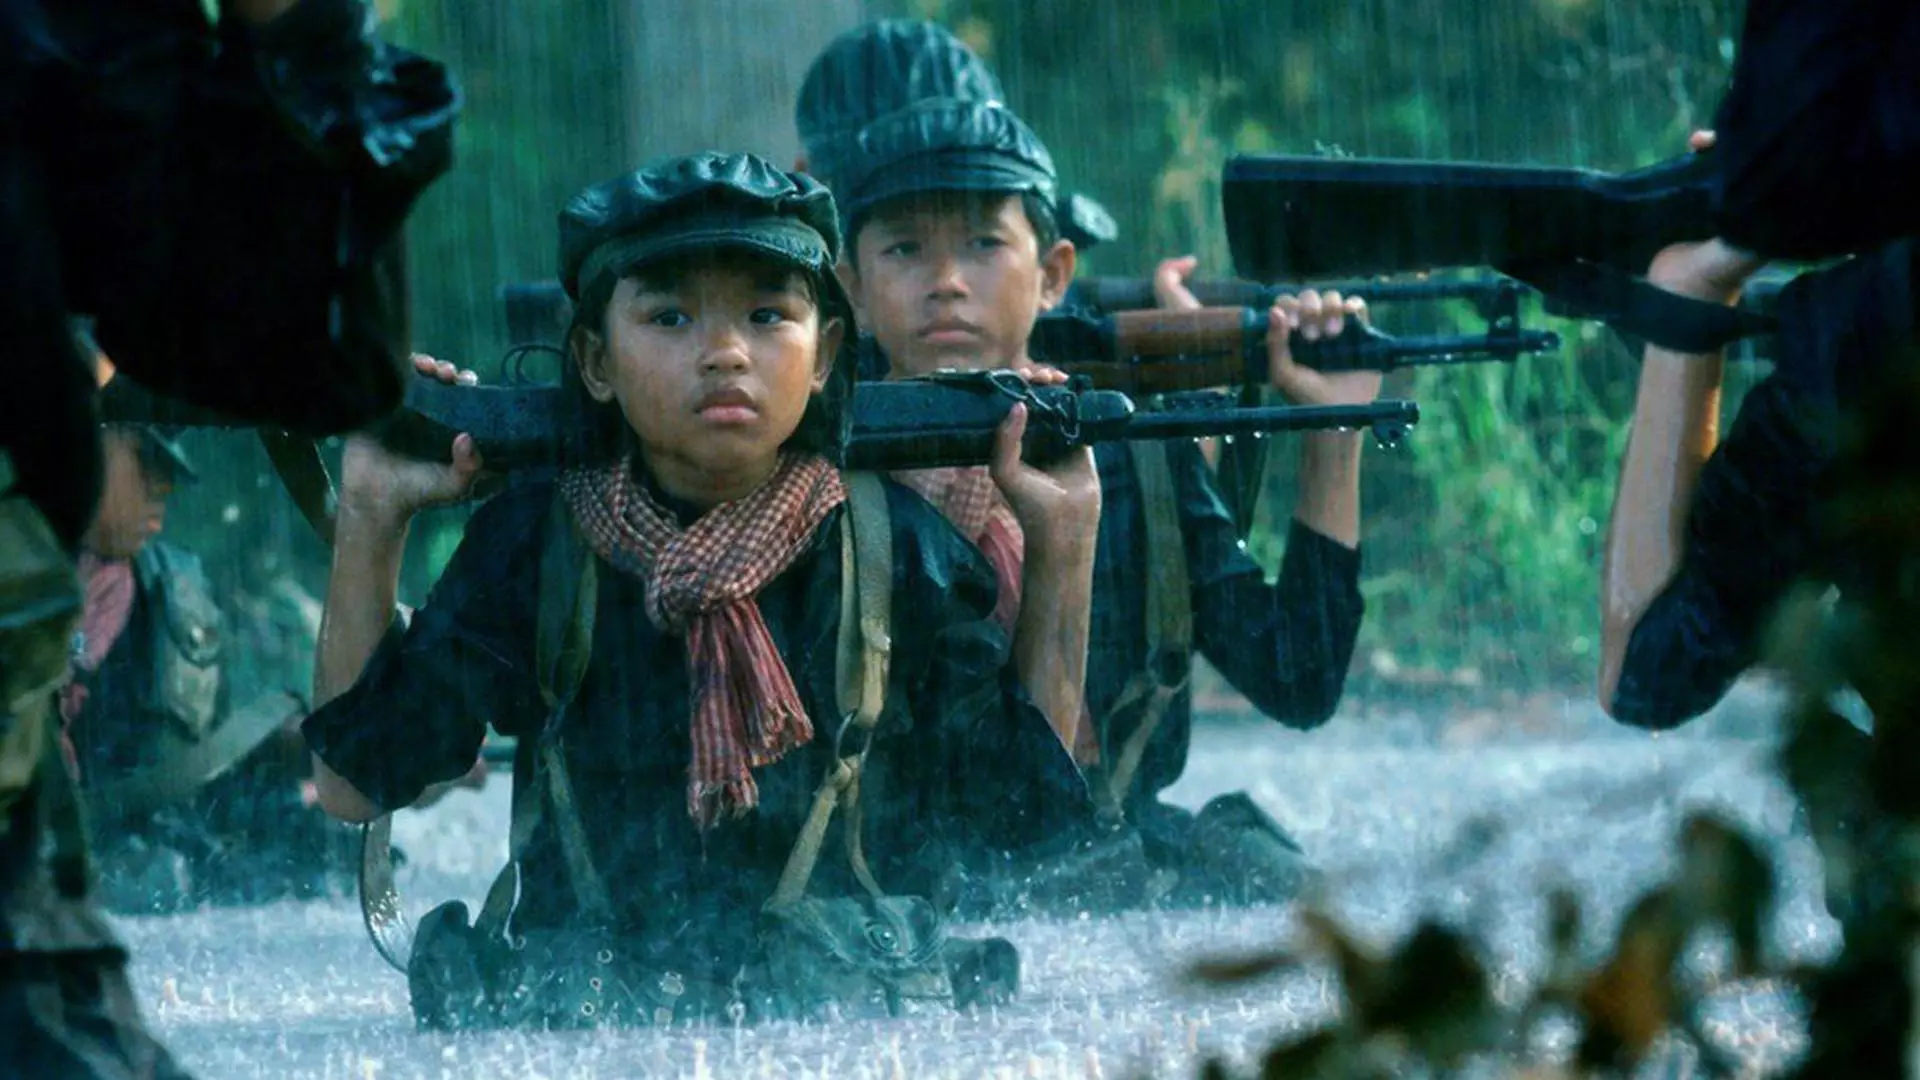 بچه‌های کوچک با لباس نظامی و اسلحه در فیلم First They Killed My Father